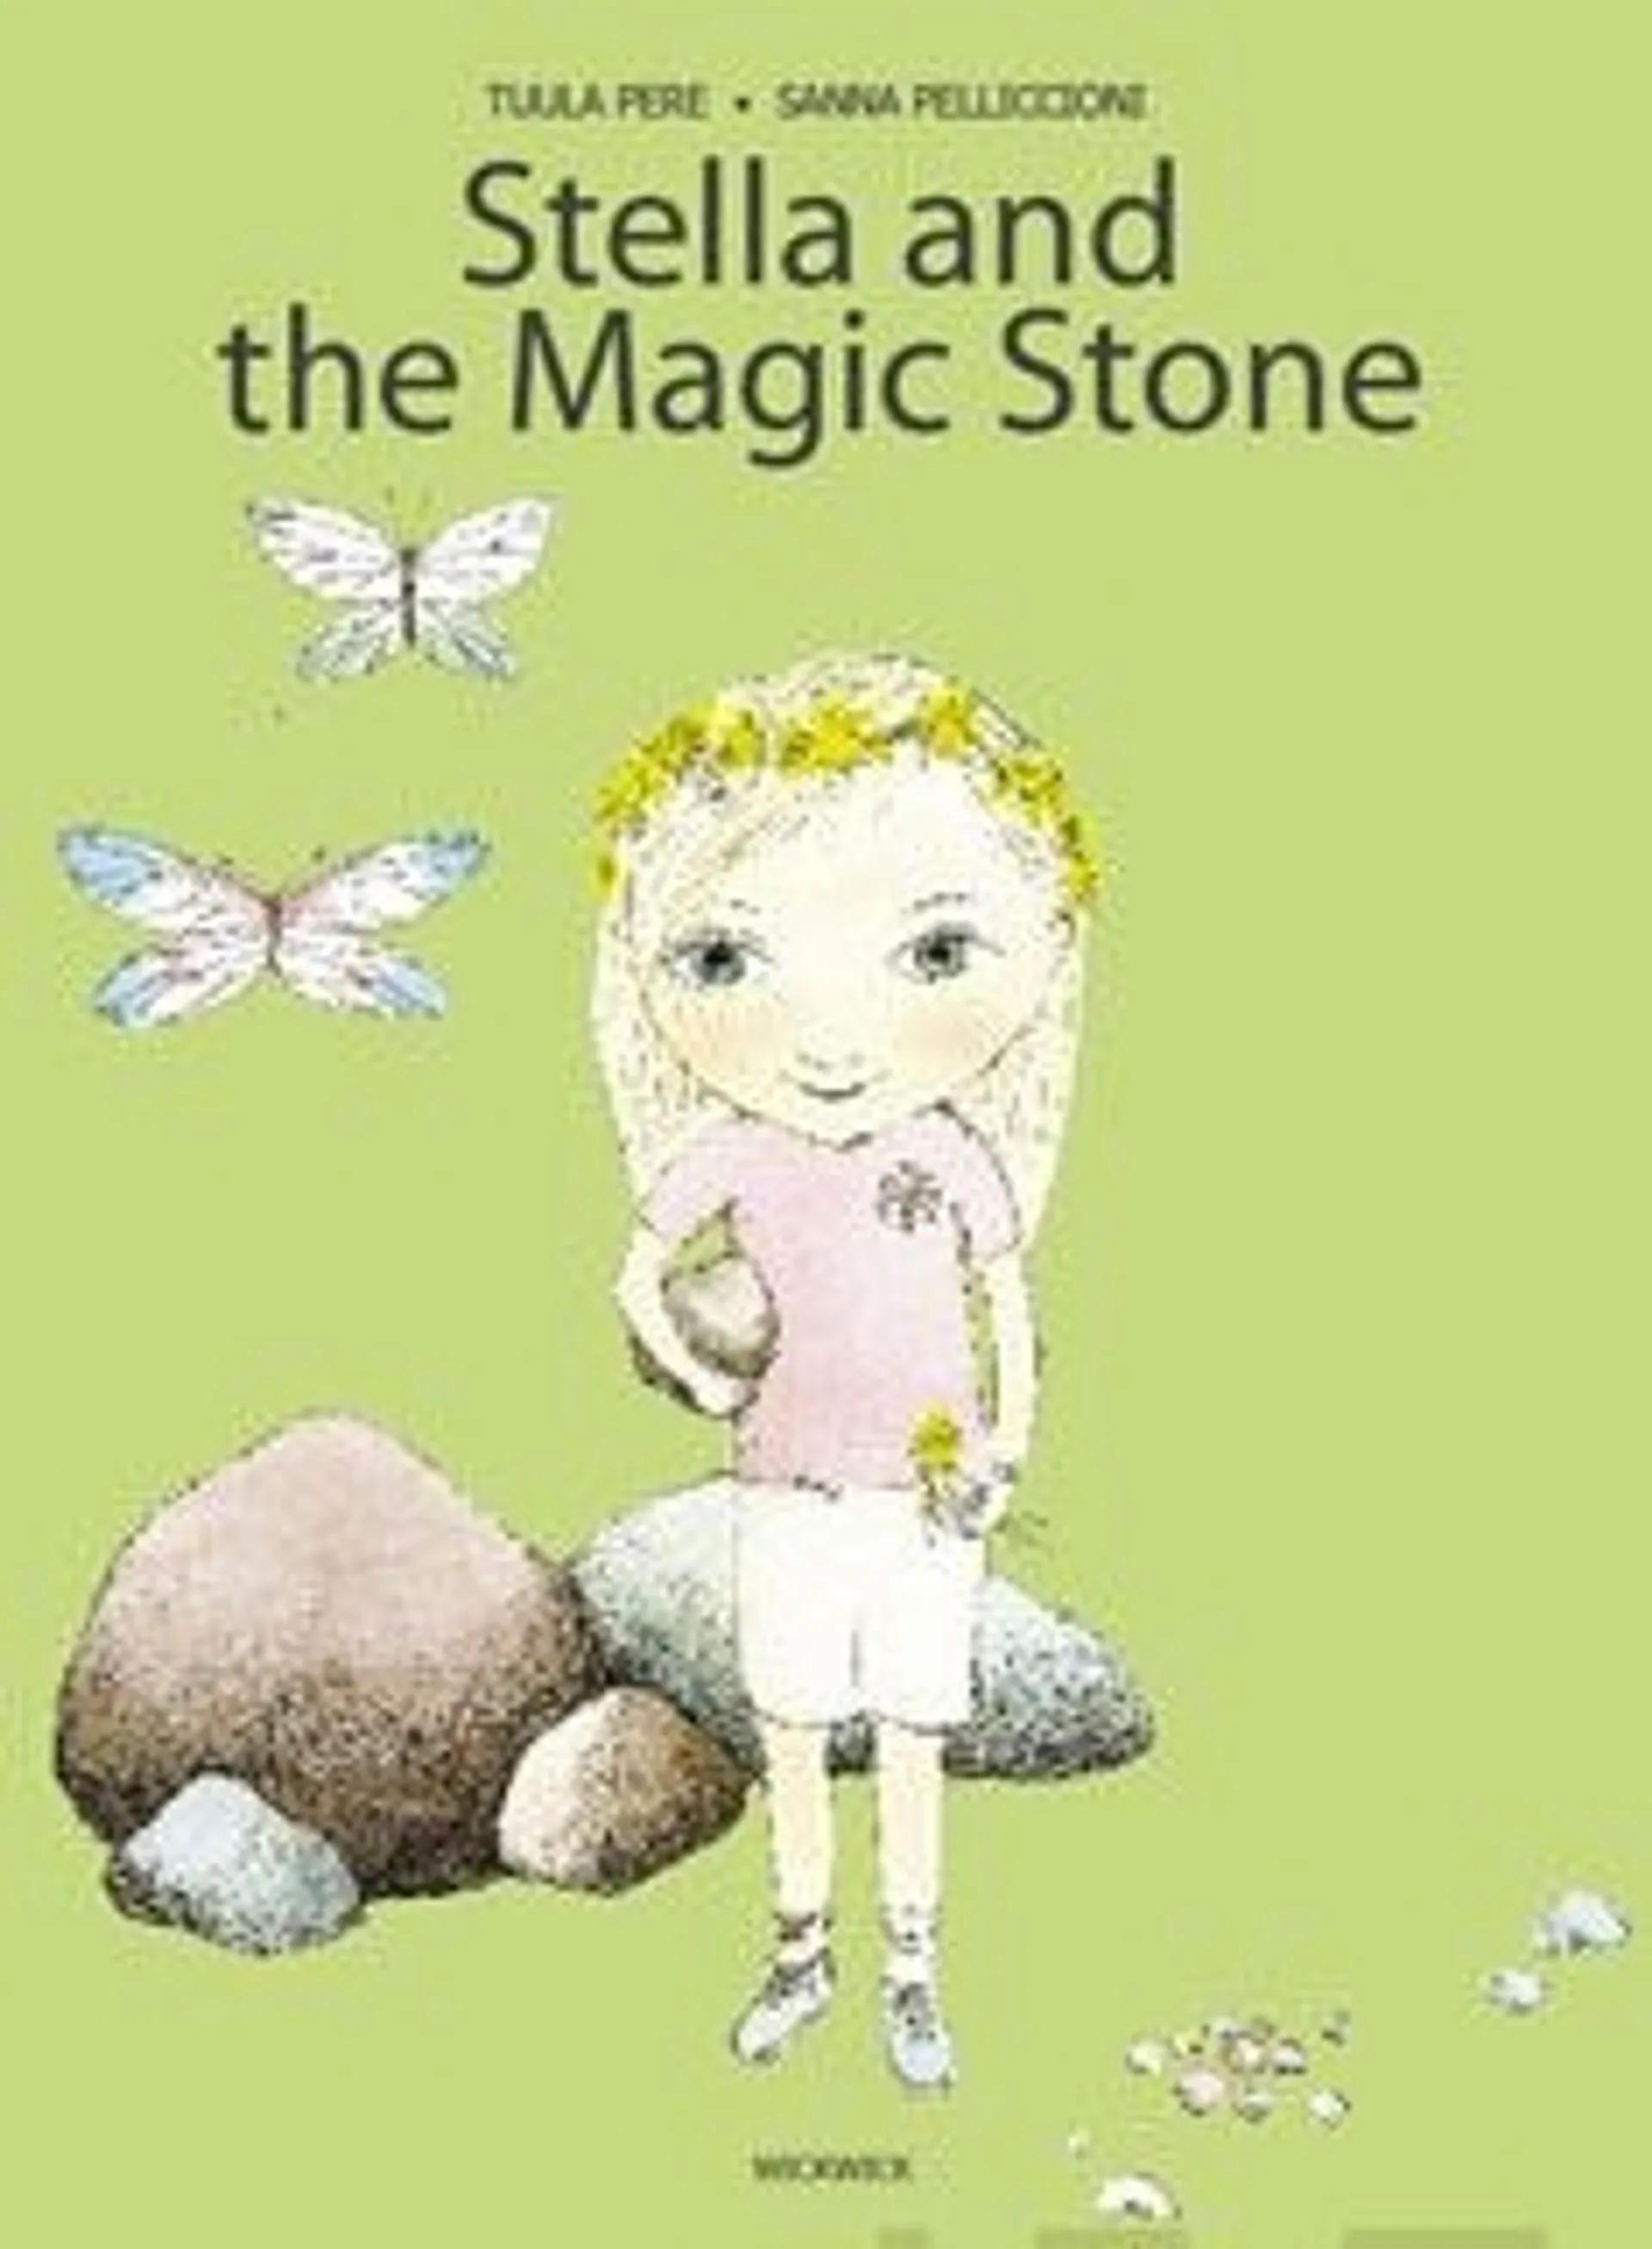 Pere, Stella and the Magic Stone